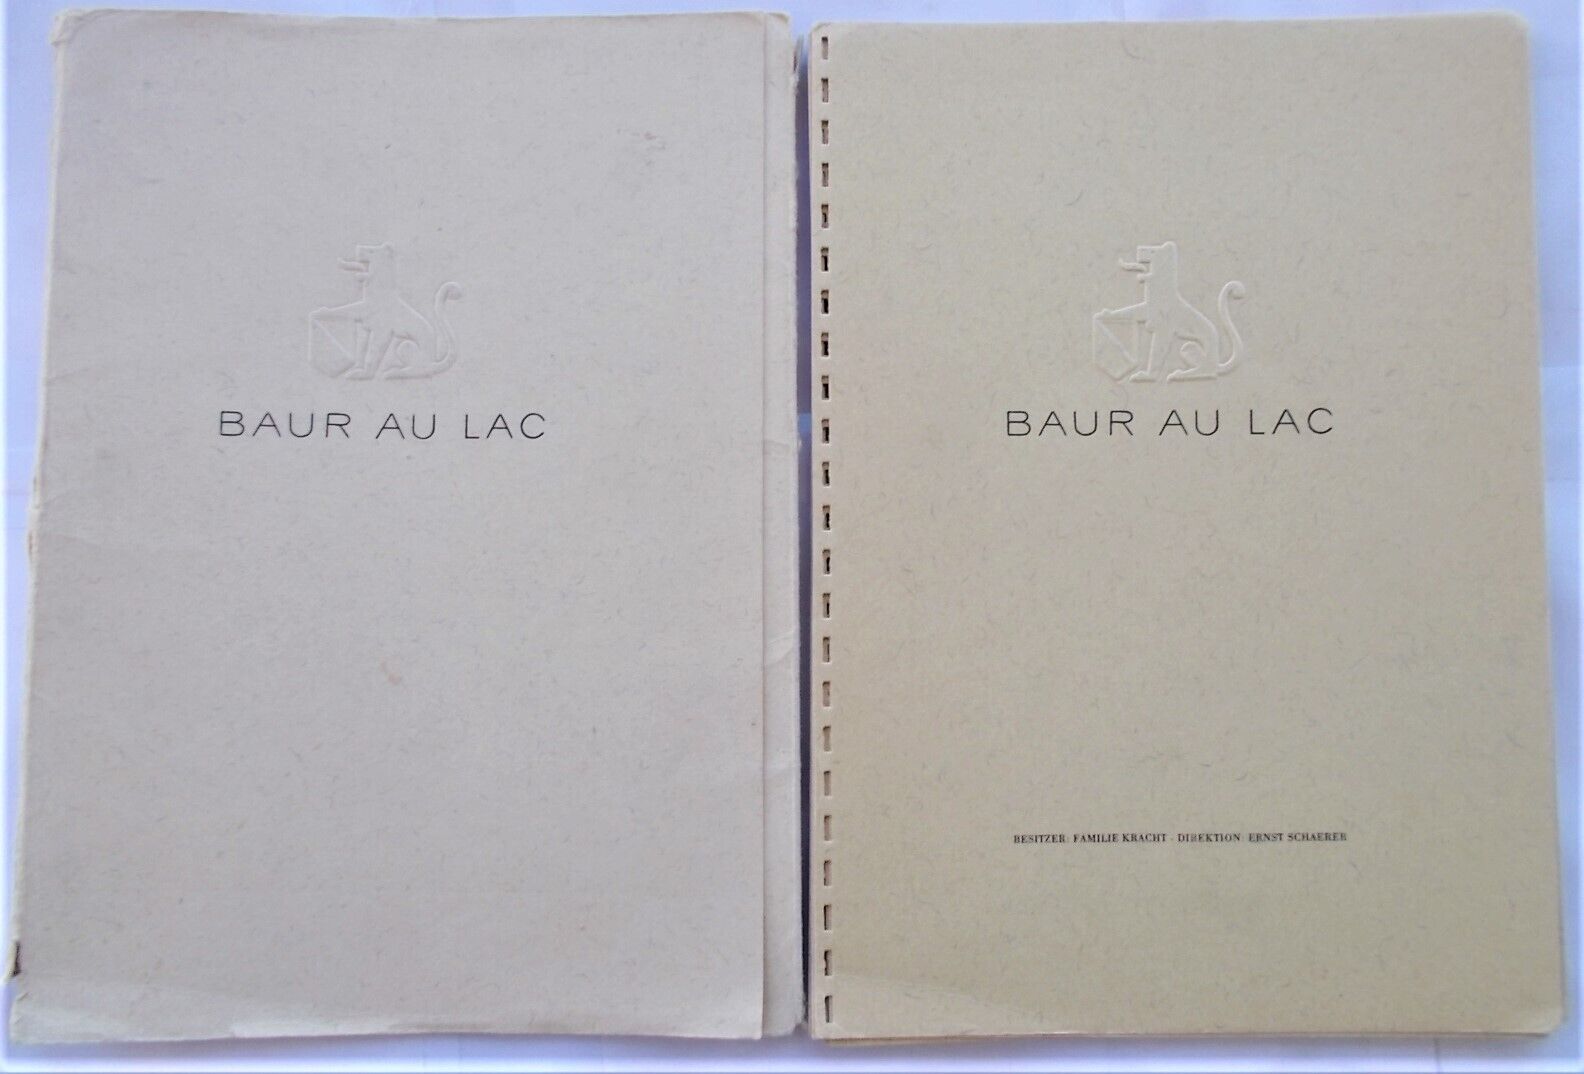 Baur Au Lac Hotel Restaurant Wine List Catalogue c1960s Zurich Switzerland Rare